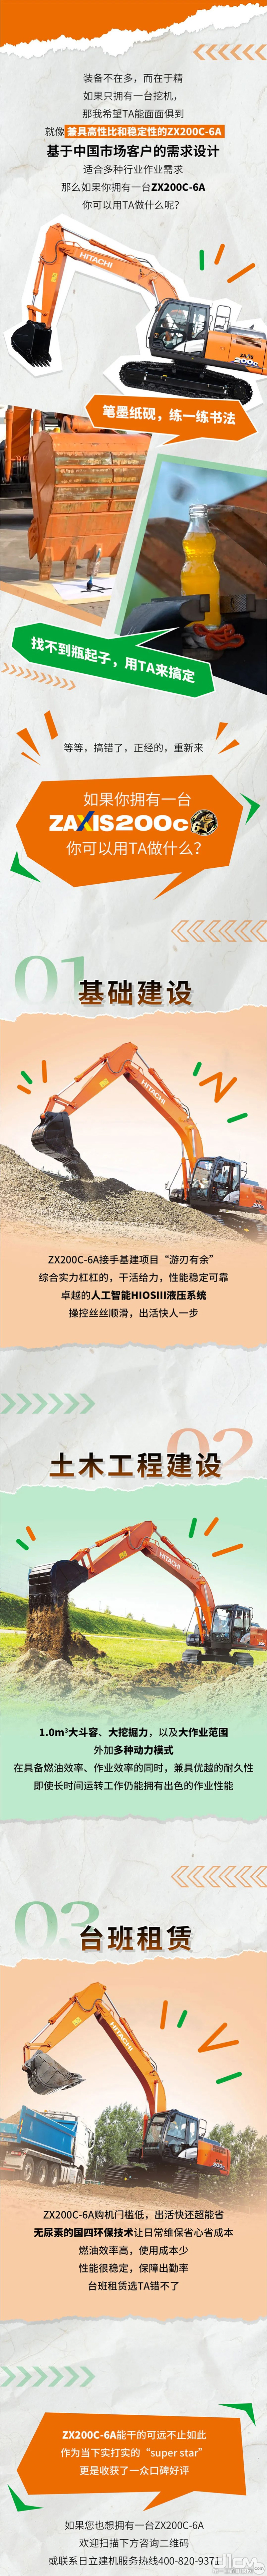 如果有台日立ZAXIS200C-6A挖掘机，你可以用TA做啥工程？